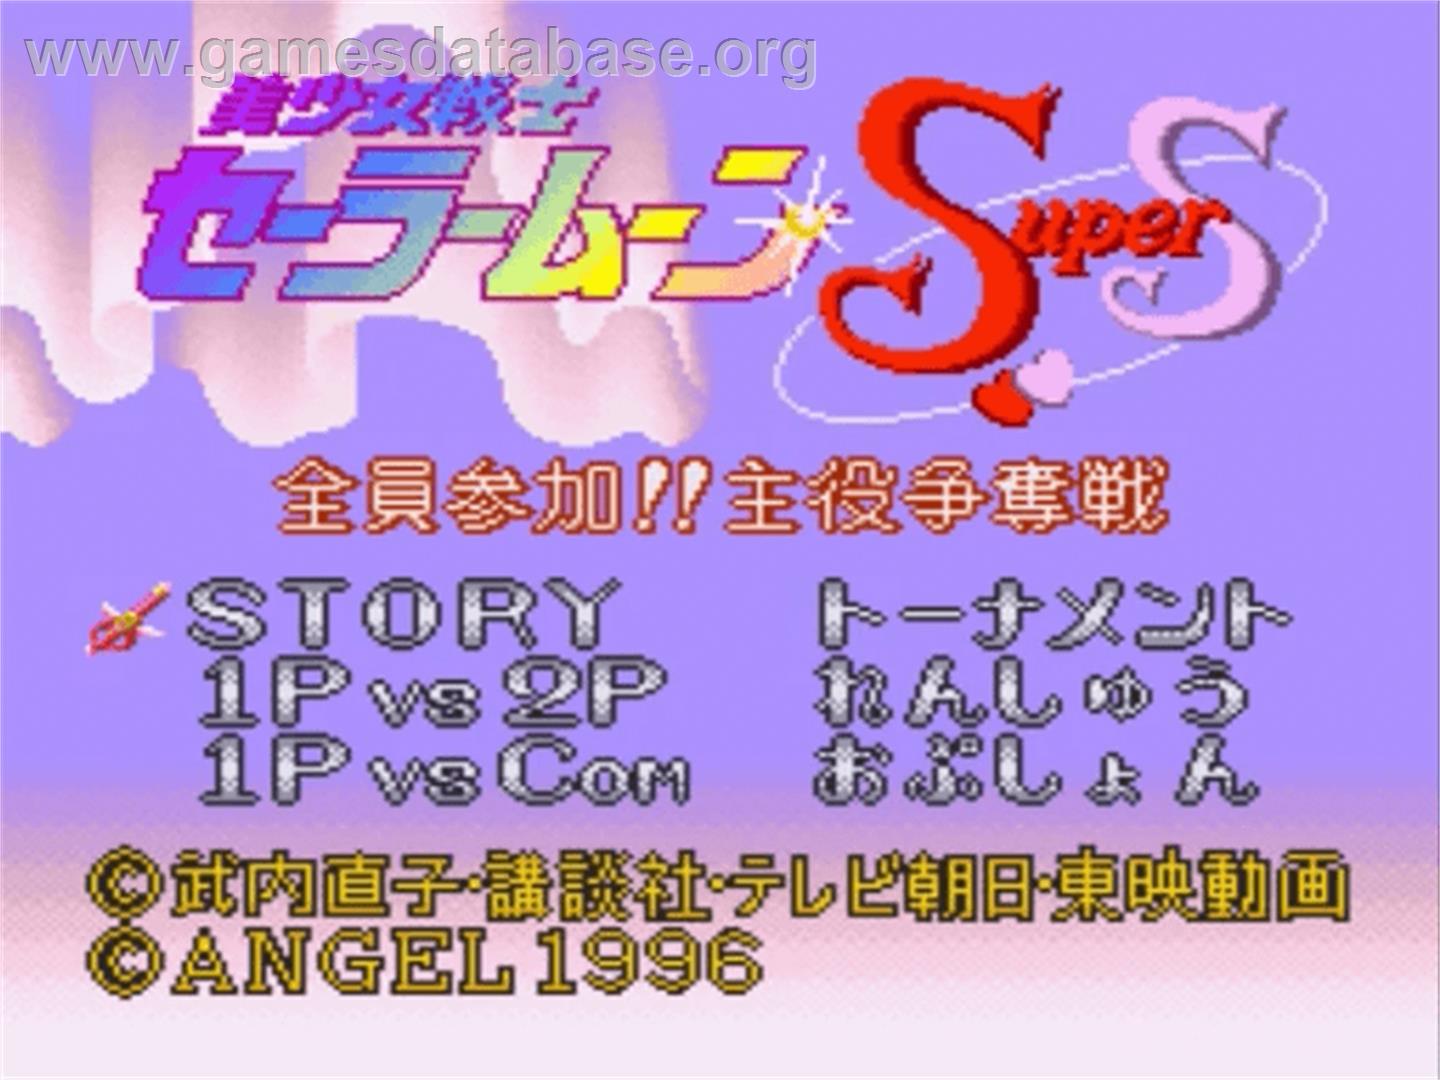 Bishoujo Senshi Sailor Moon Super S: Zen'in Sanka!! Shuyaku Soudatsusen - Nintendo SNES - Artwork - Title Screen